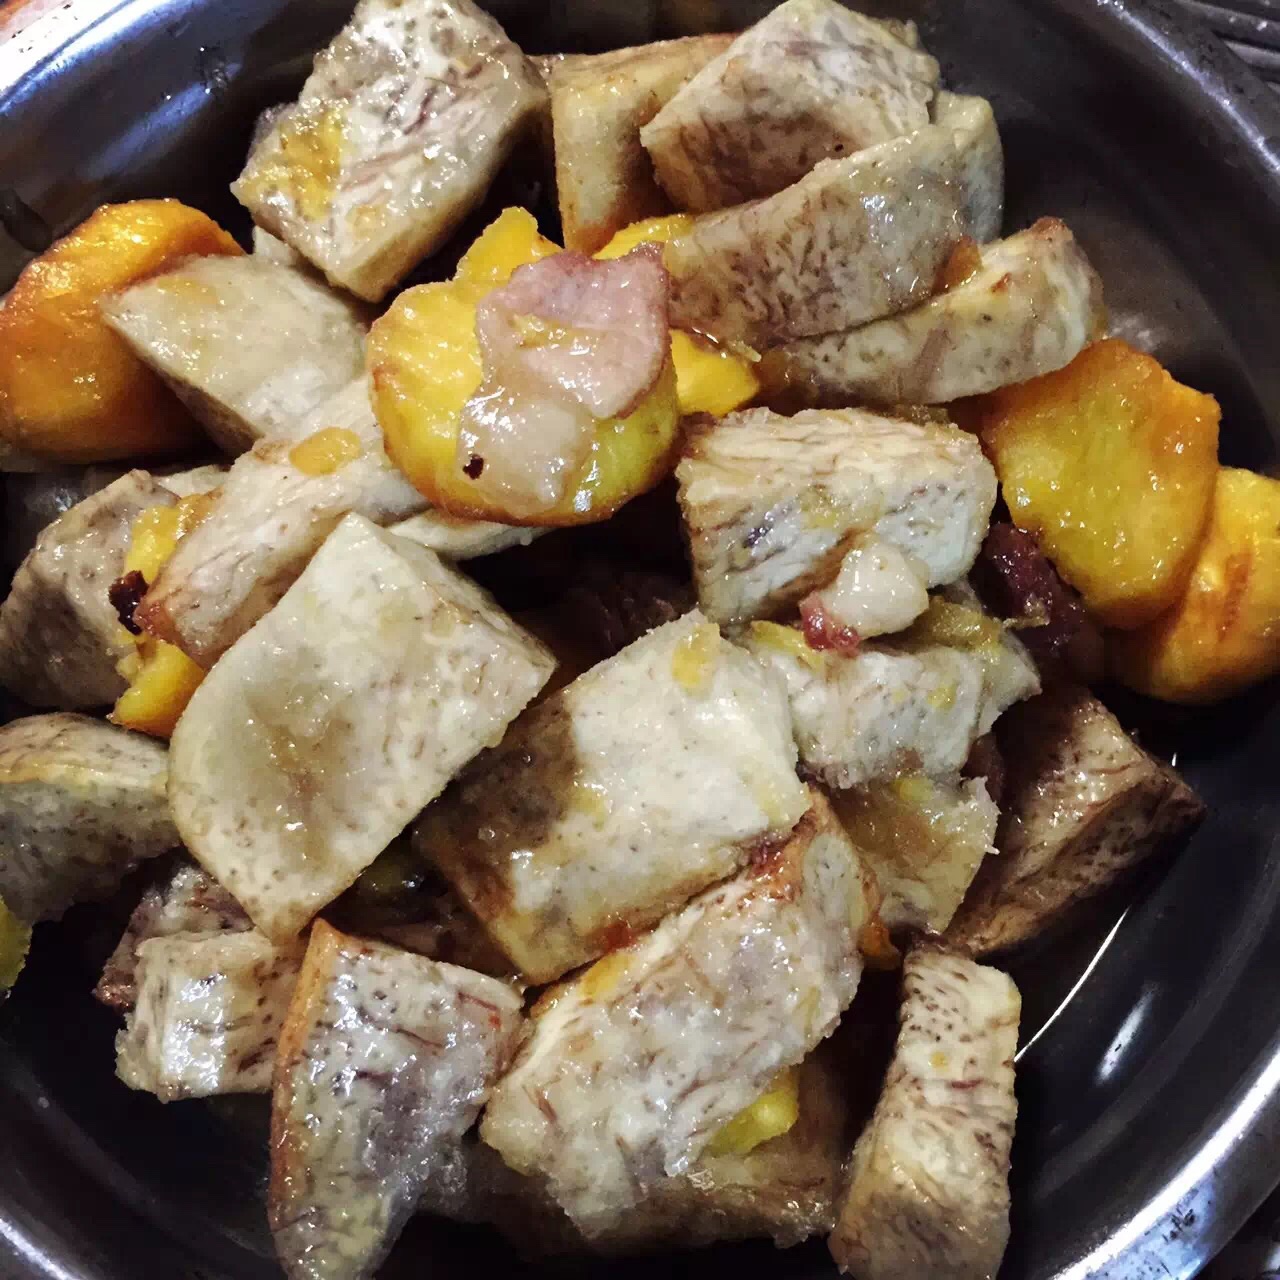 椰香南瓜湯食譜、做法 | KasoKitchen的Cook1Cook食譜分享